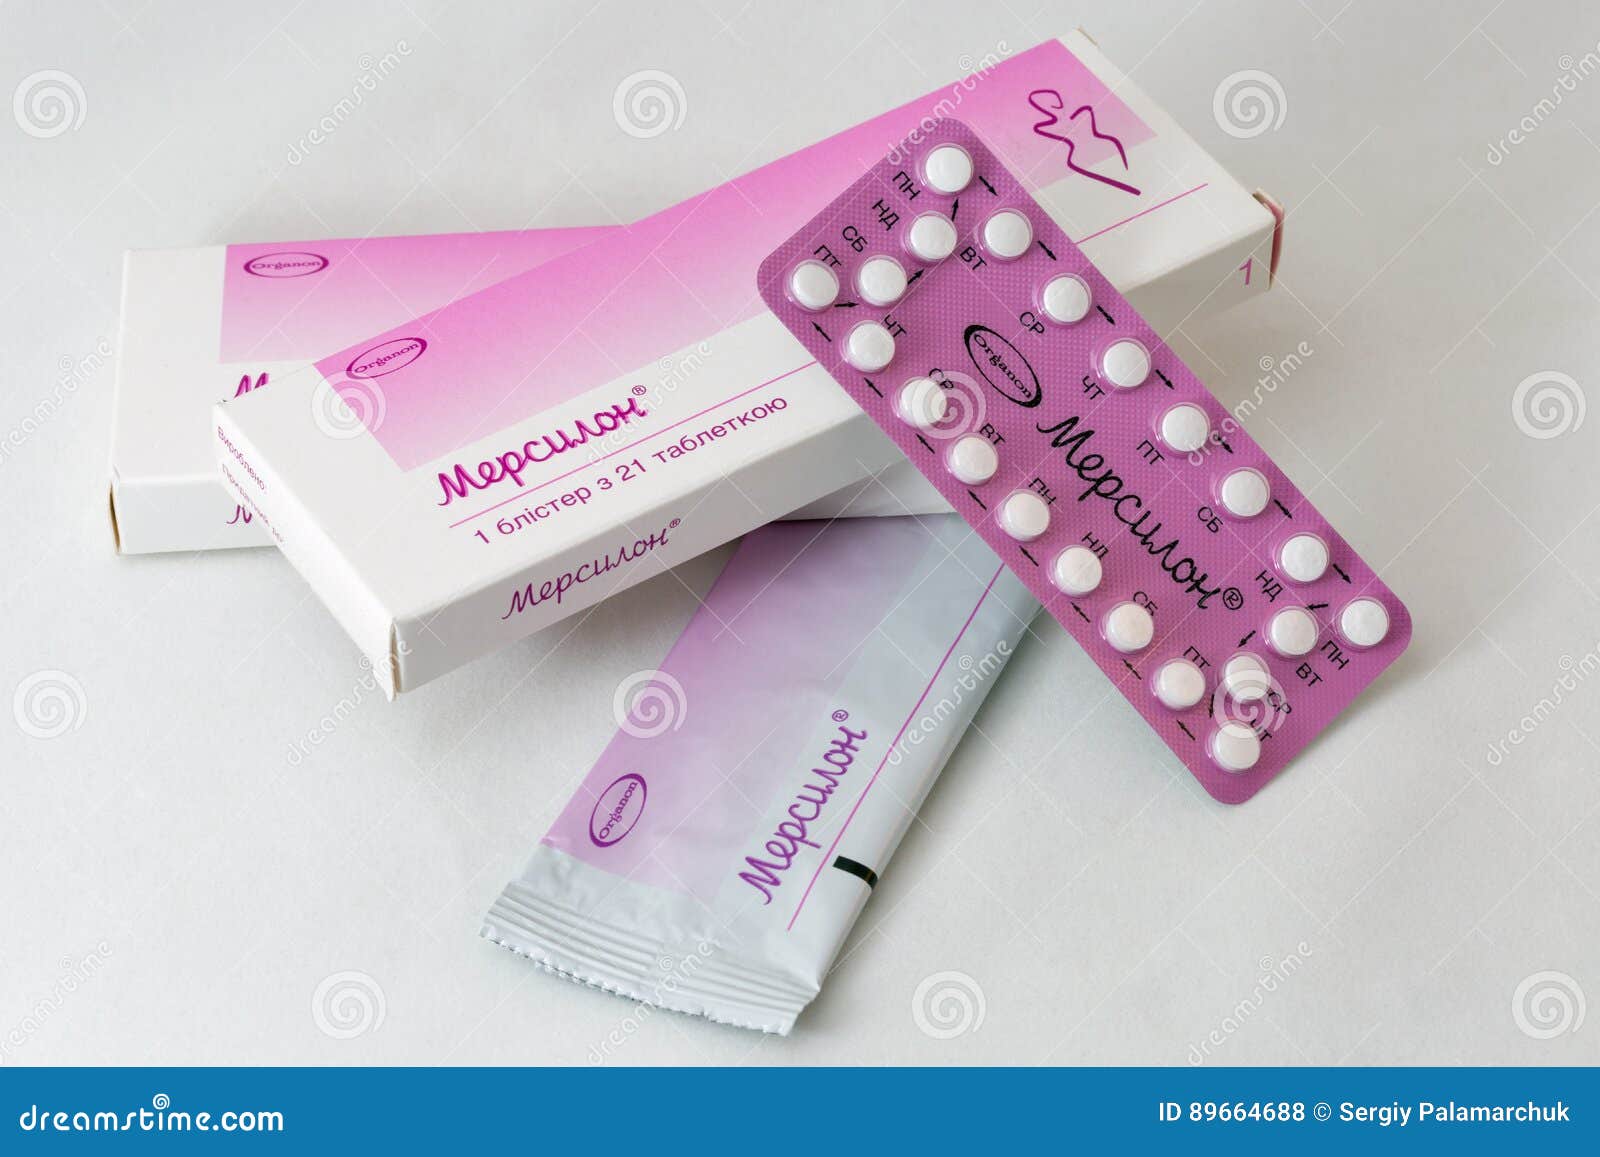 можно ли кончить если принимаешь противозачаточные таблетки фото 77